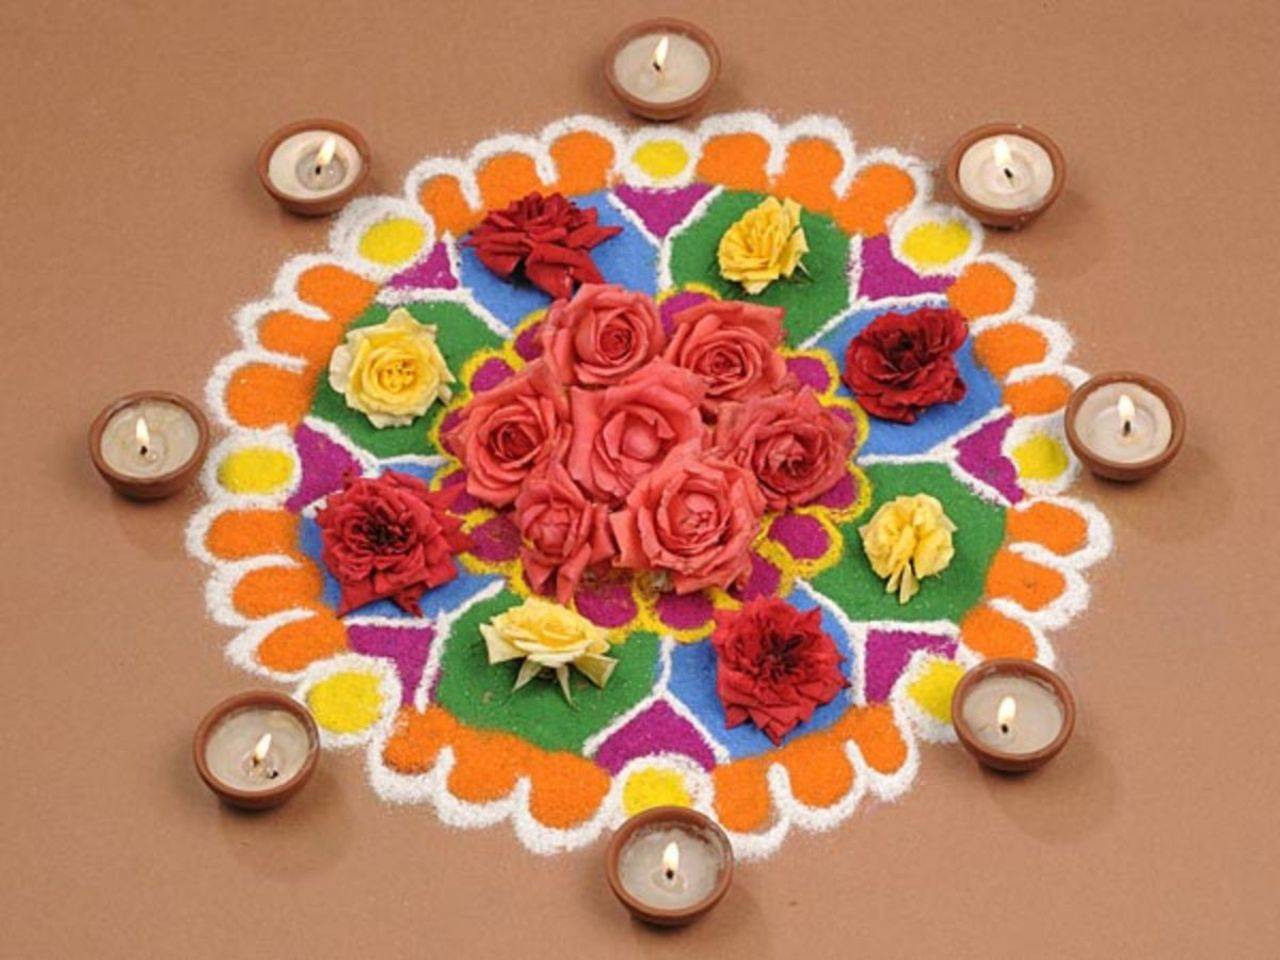 Diwali Rangoli Designs: Here are 10 unique flower Rangoli designs ...